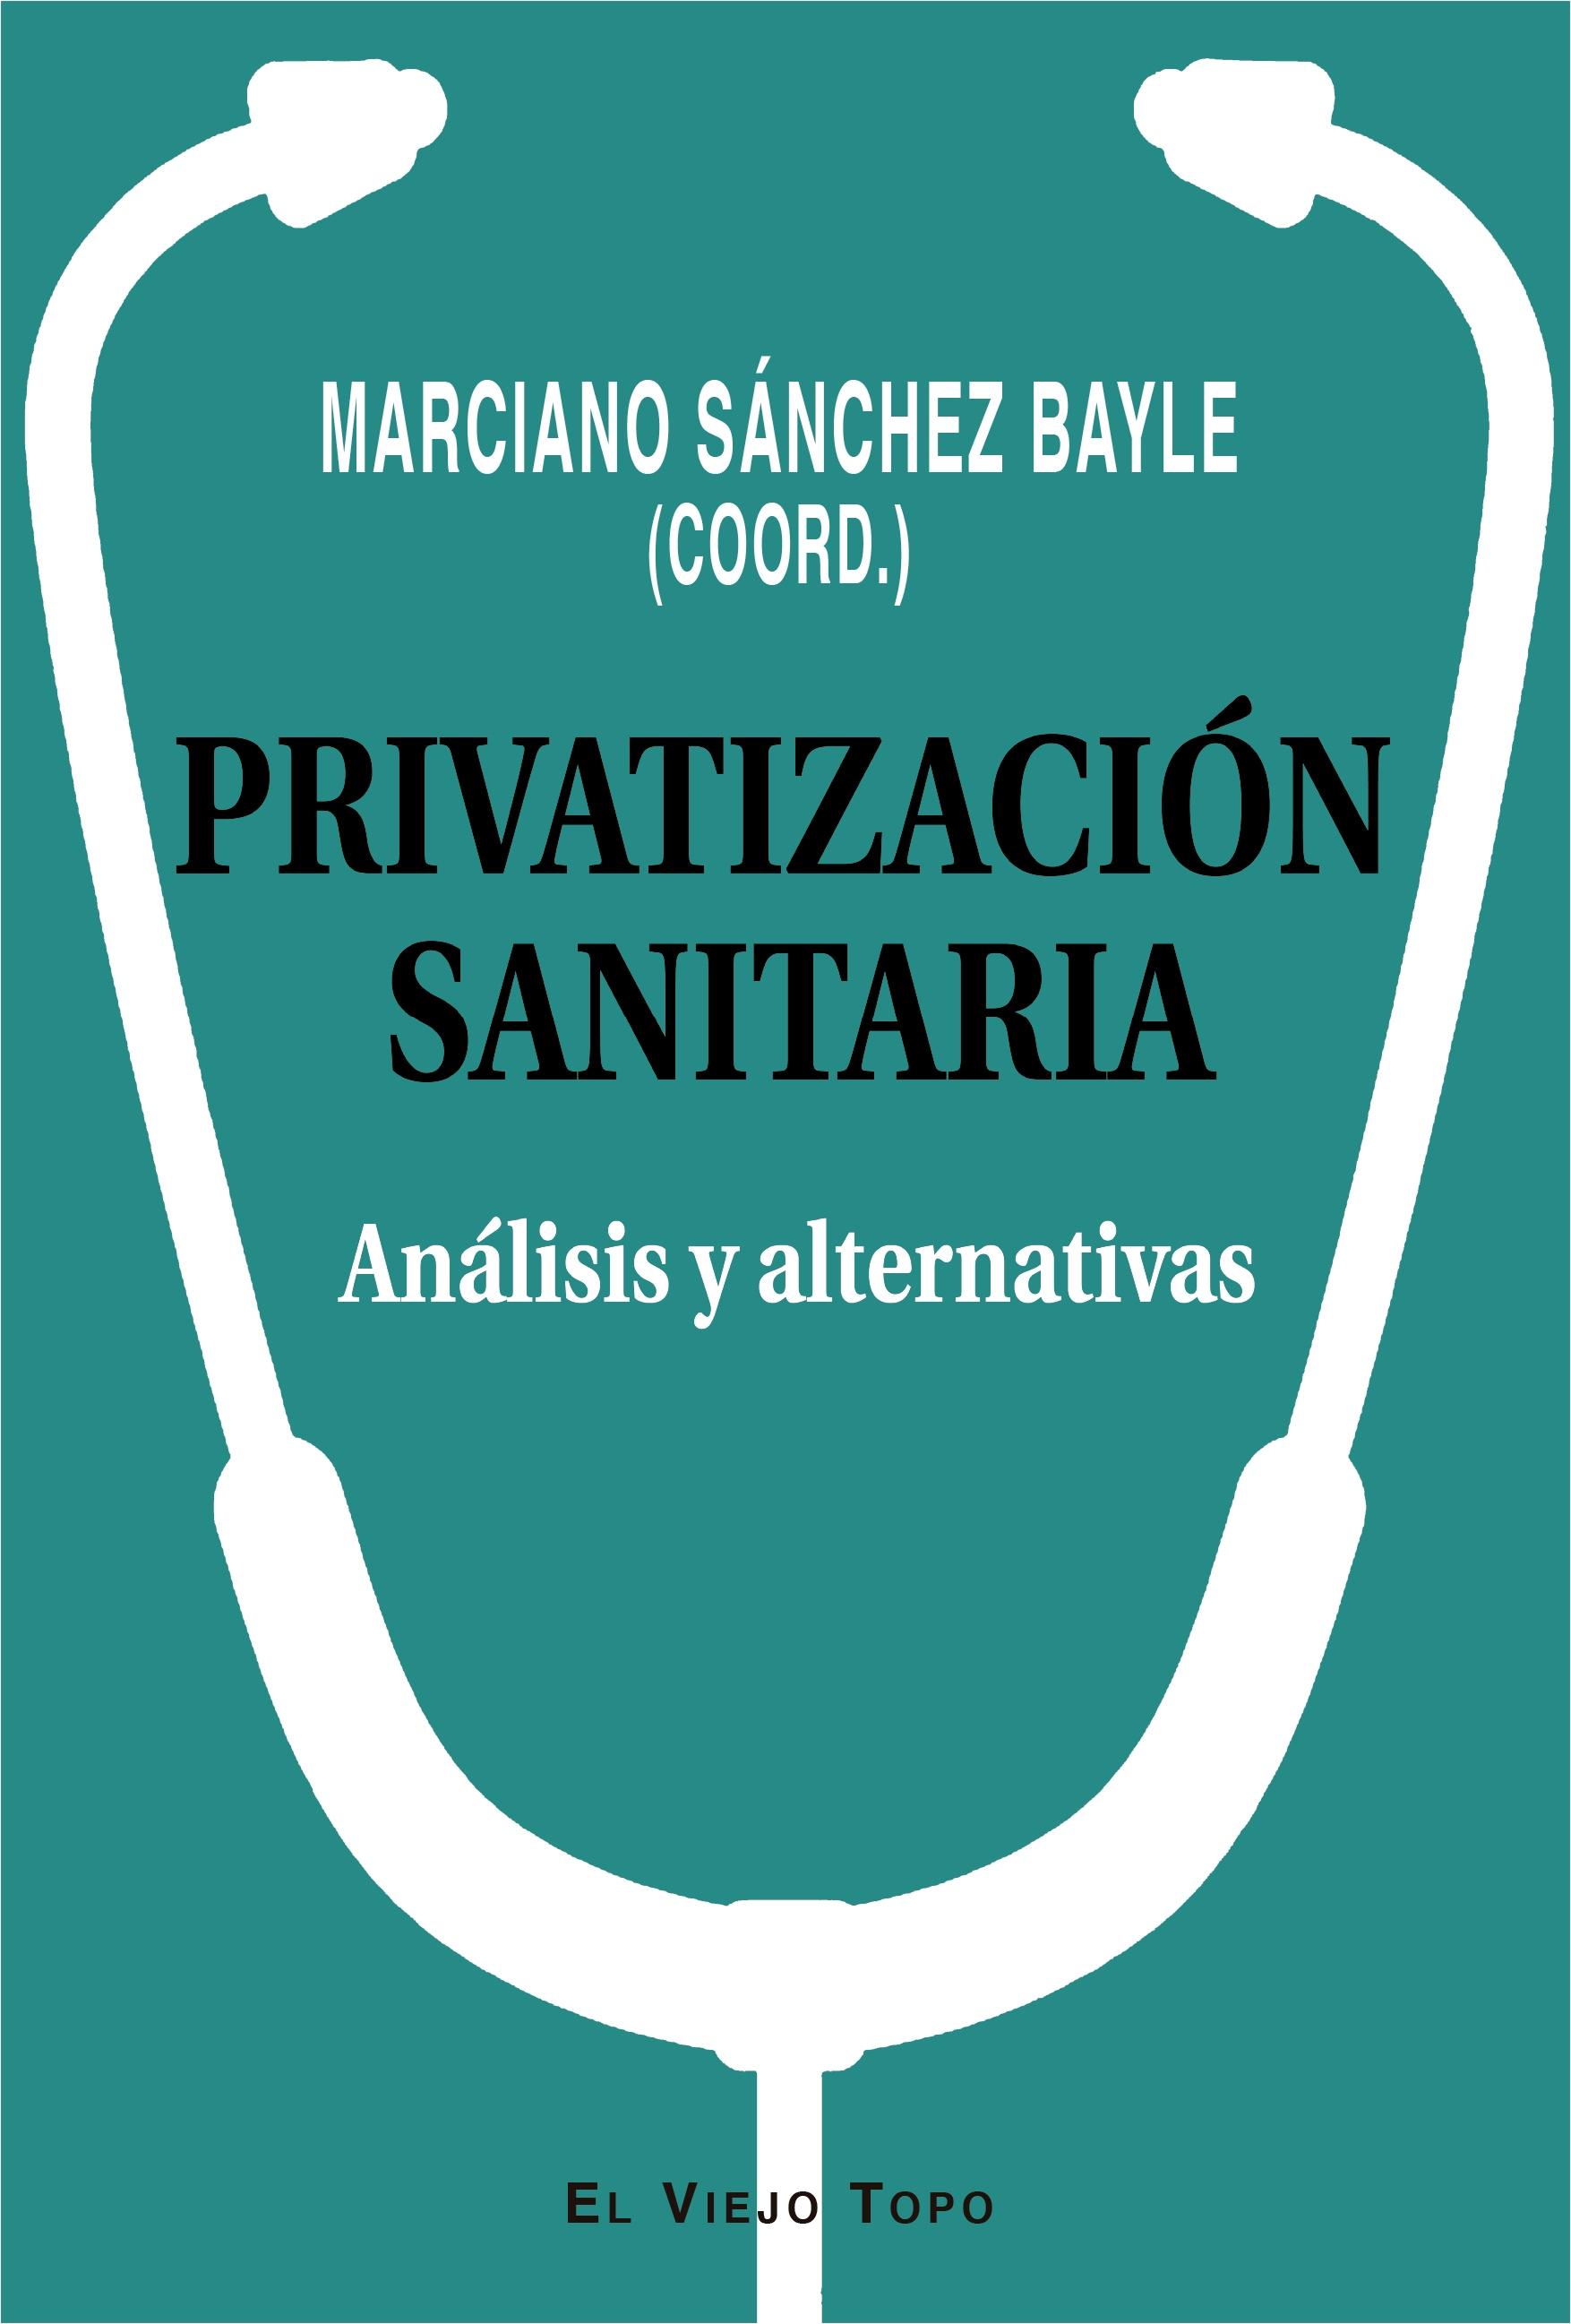 Privatización sanitaria "Análisis y alternativas"